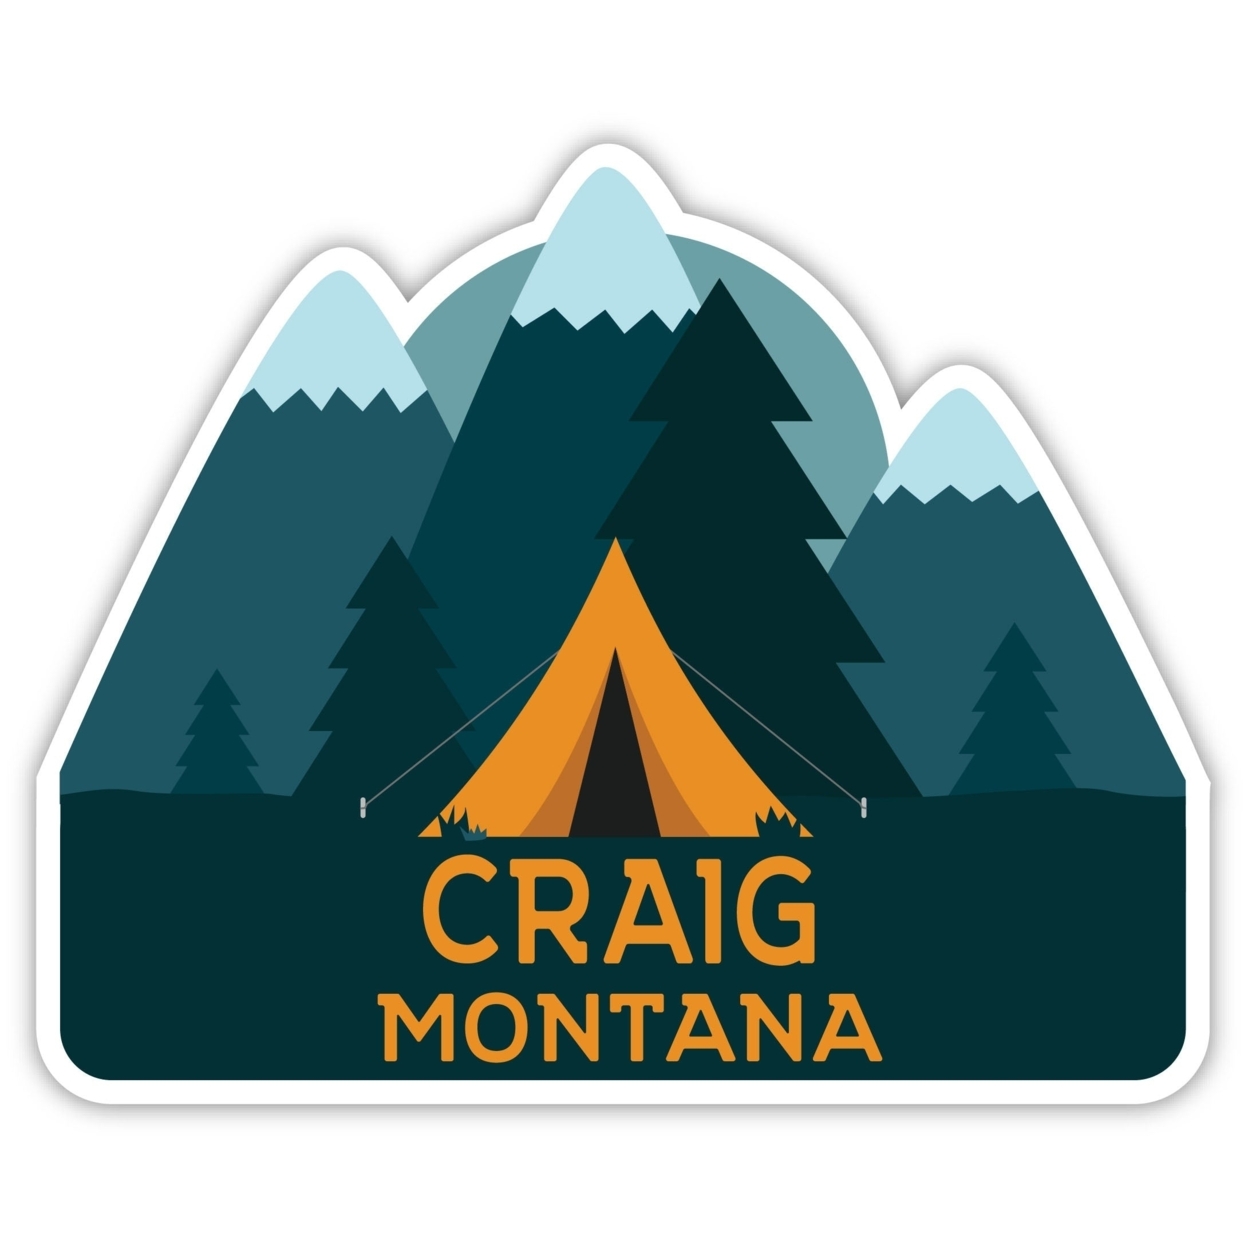 Craig Montana Souvenir Decorative Stickers (Choose Theme And Size) - Single Unit, 2-Inch, Tent